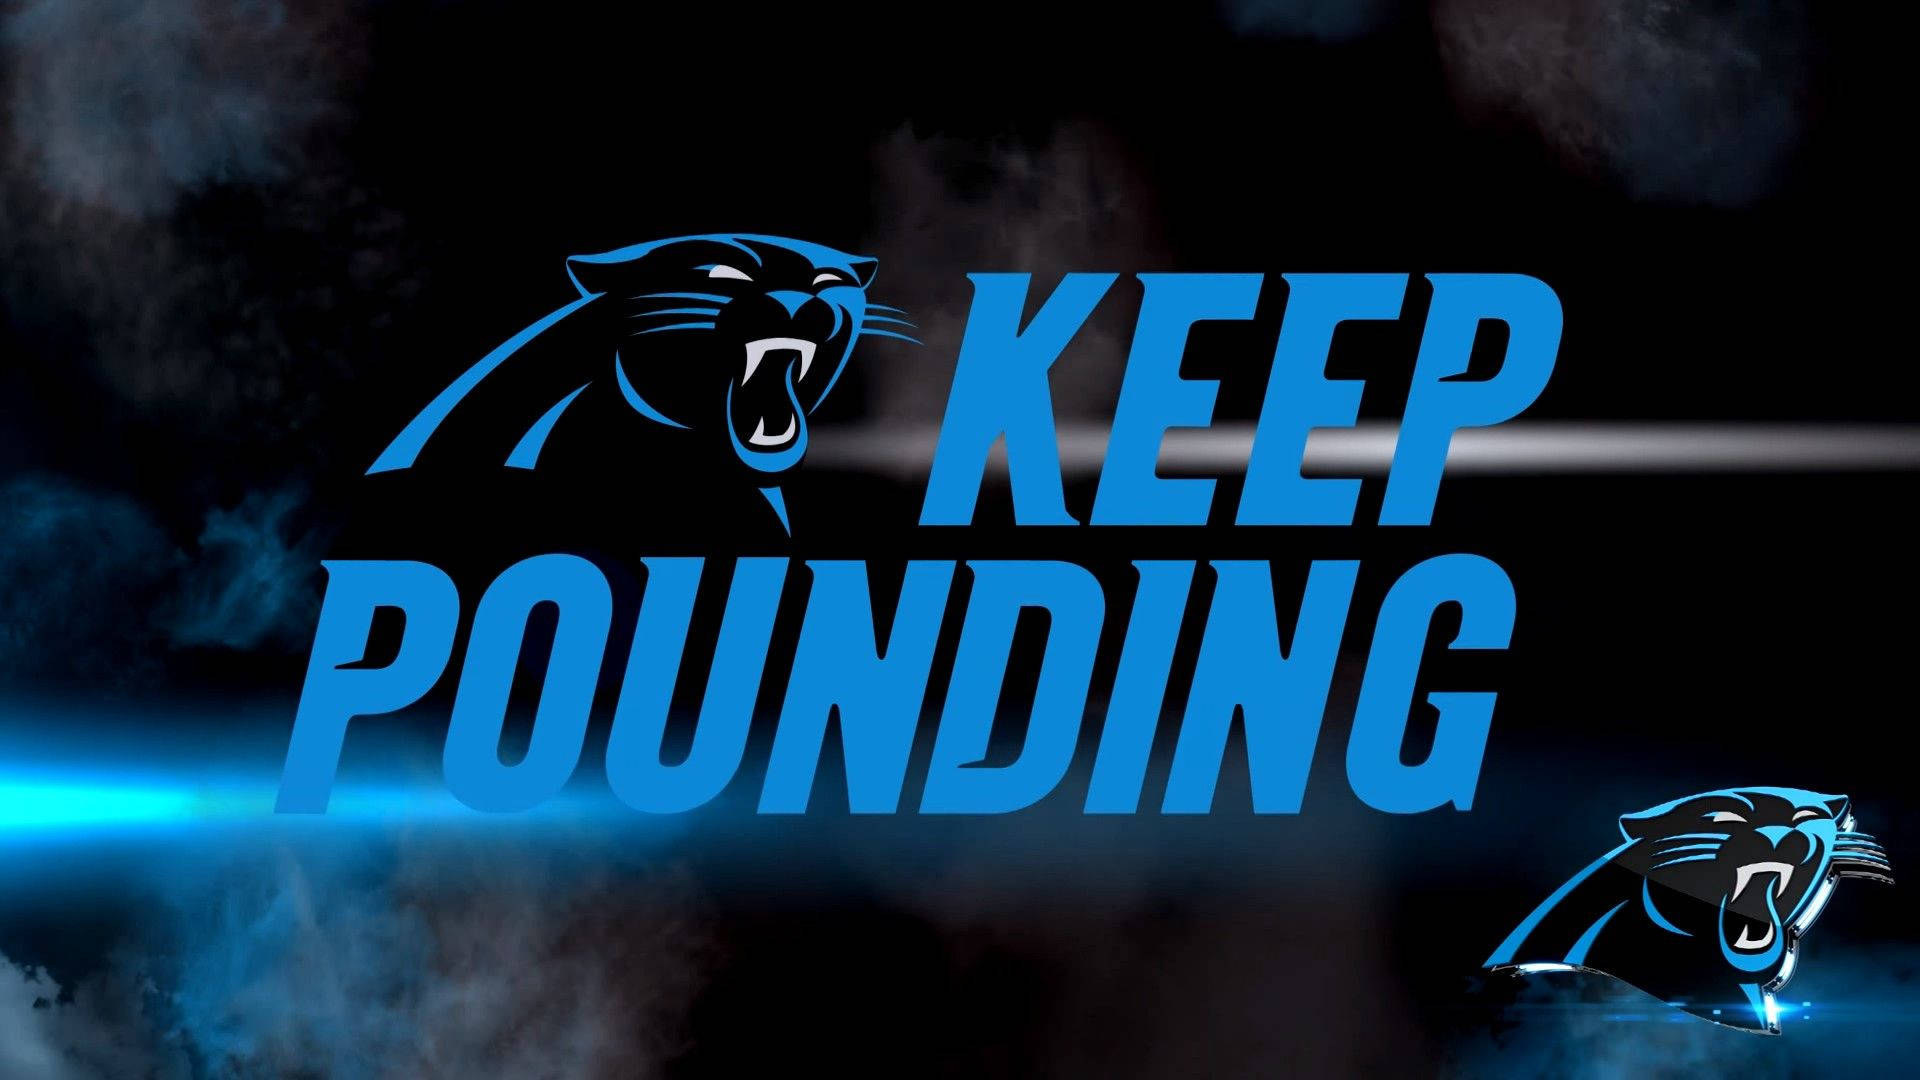 Carolina Panthers Keep Pounding